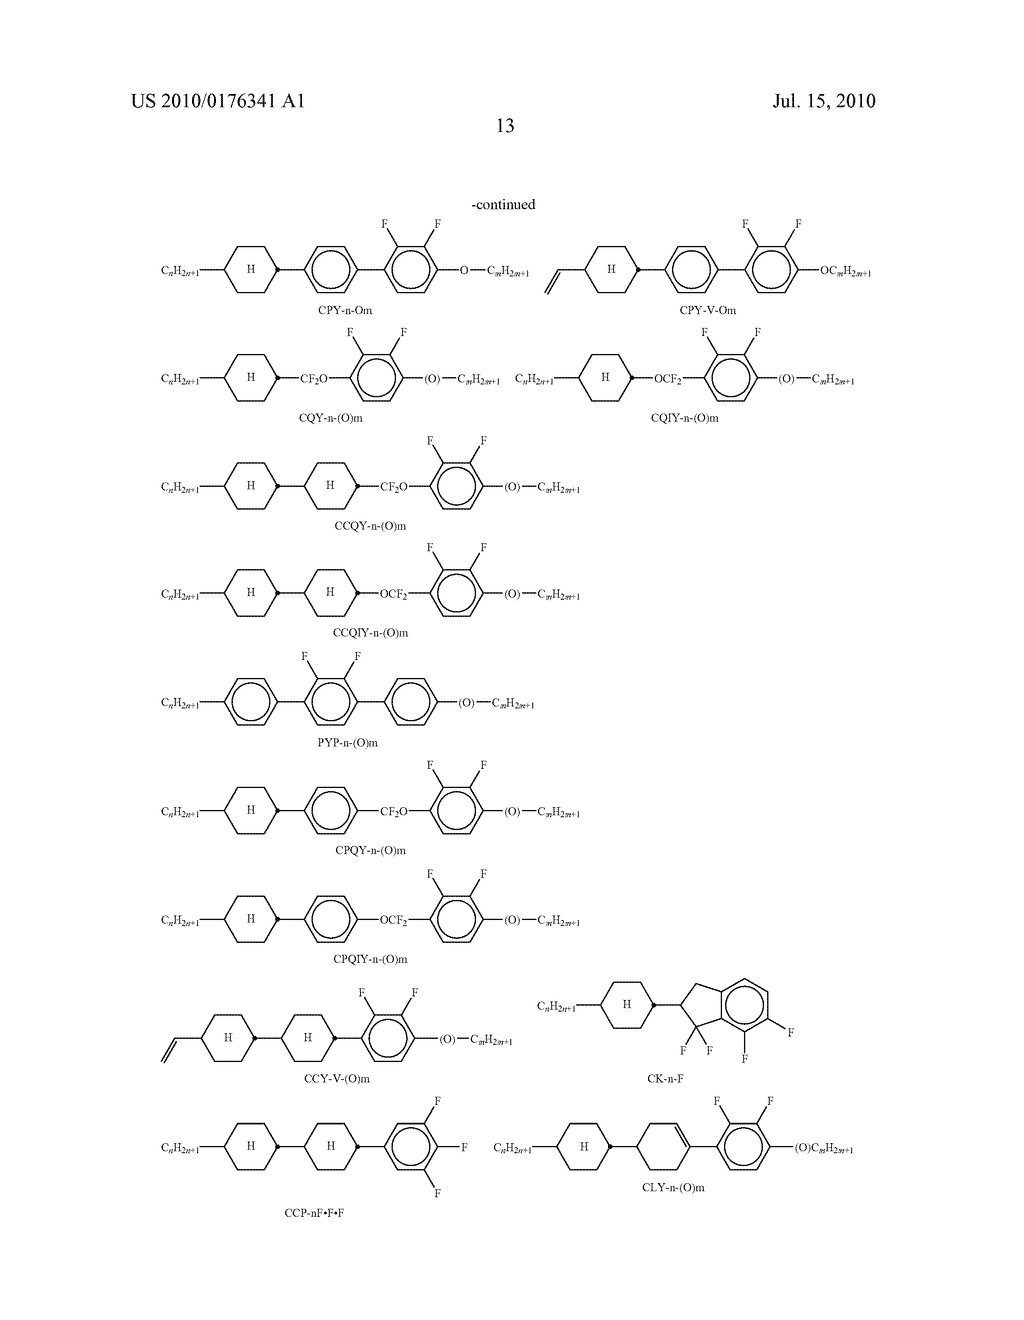 LIQUID CRYSTALLINE MEDIUM - diagram, schematic, and image 14